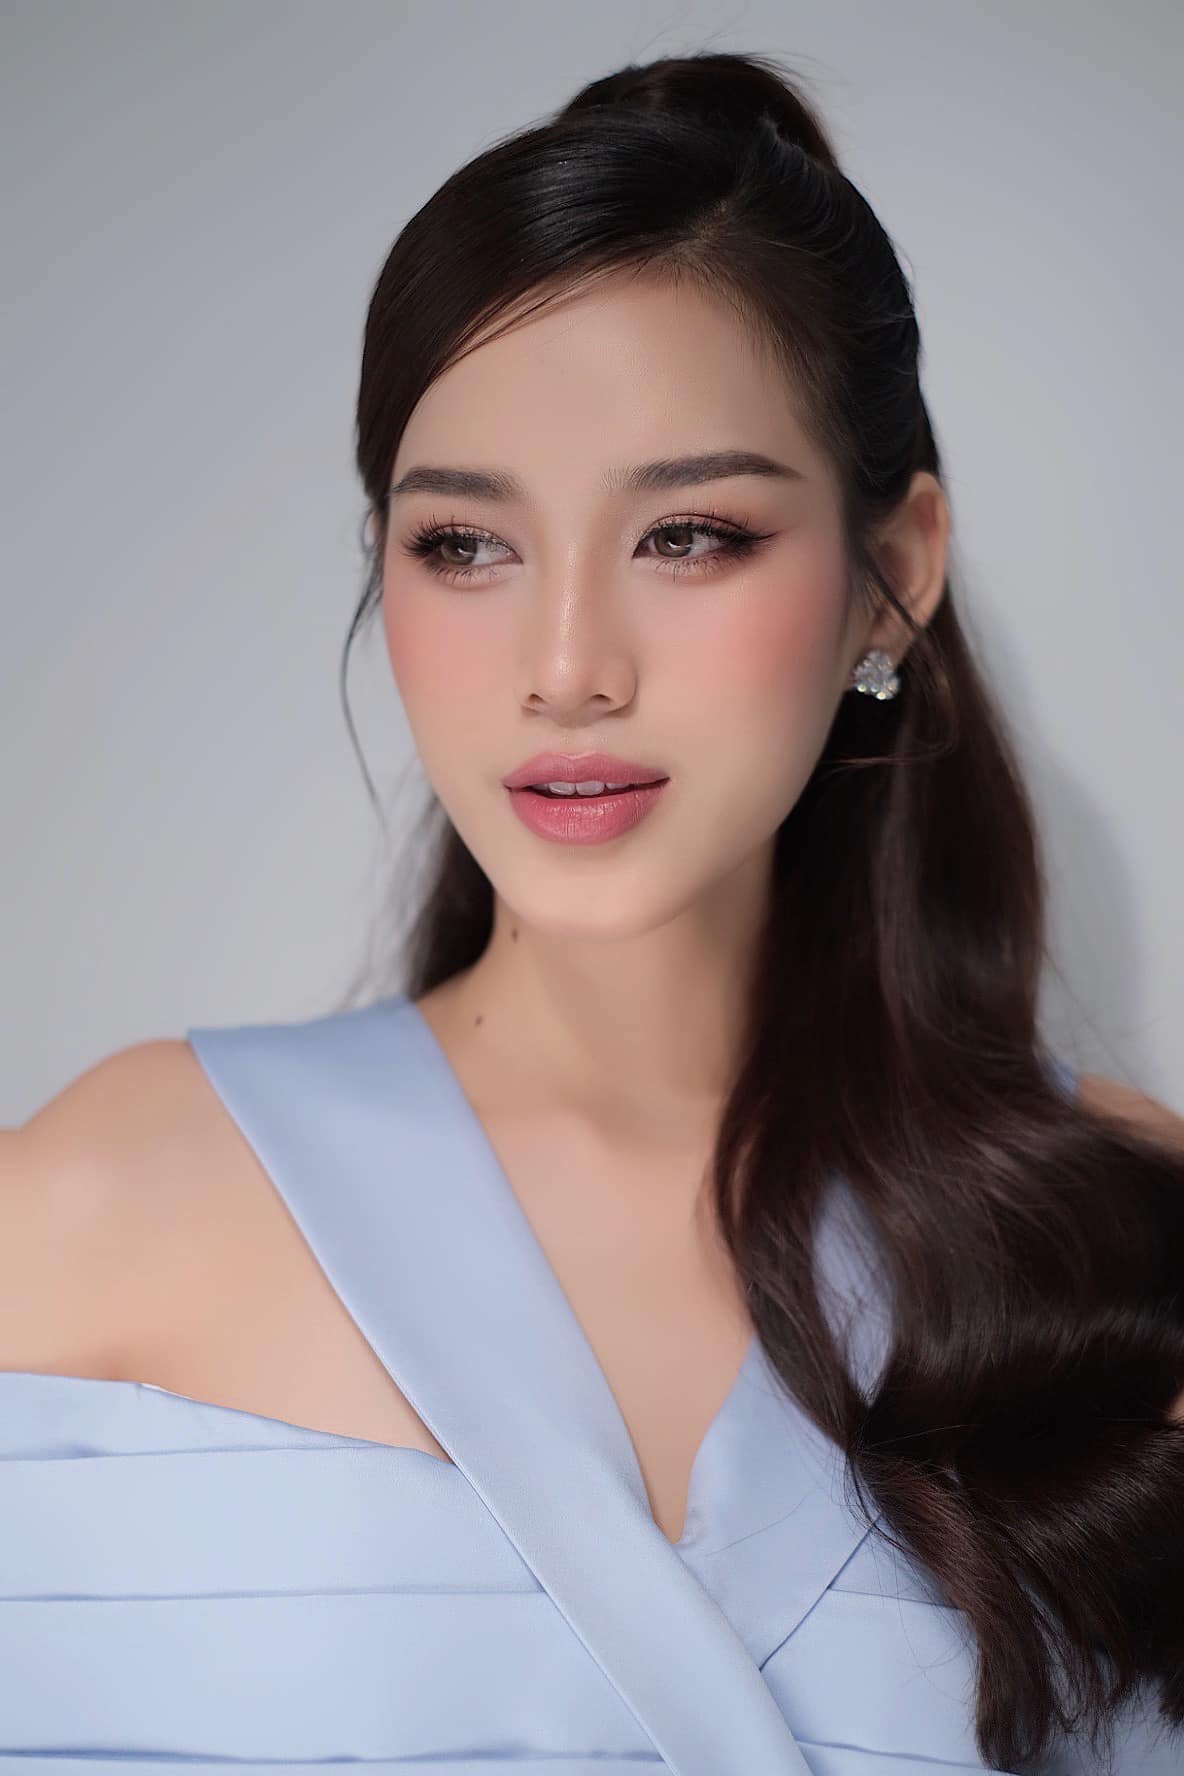 Cận cảnh gương mặt đẹp hoàn hảo của Hoa hậu Đỗ Thị Hà - ảnh 3